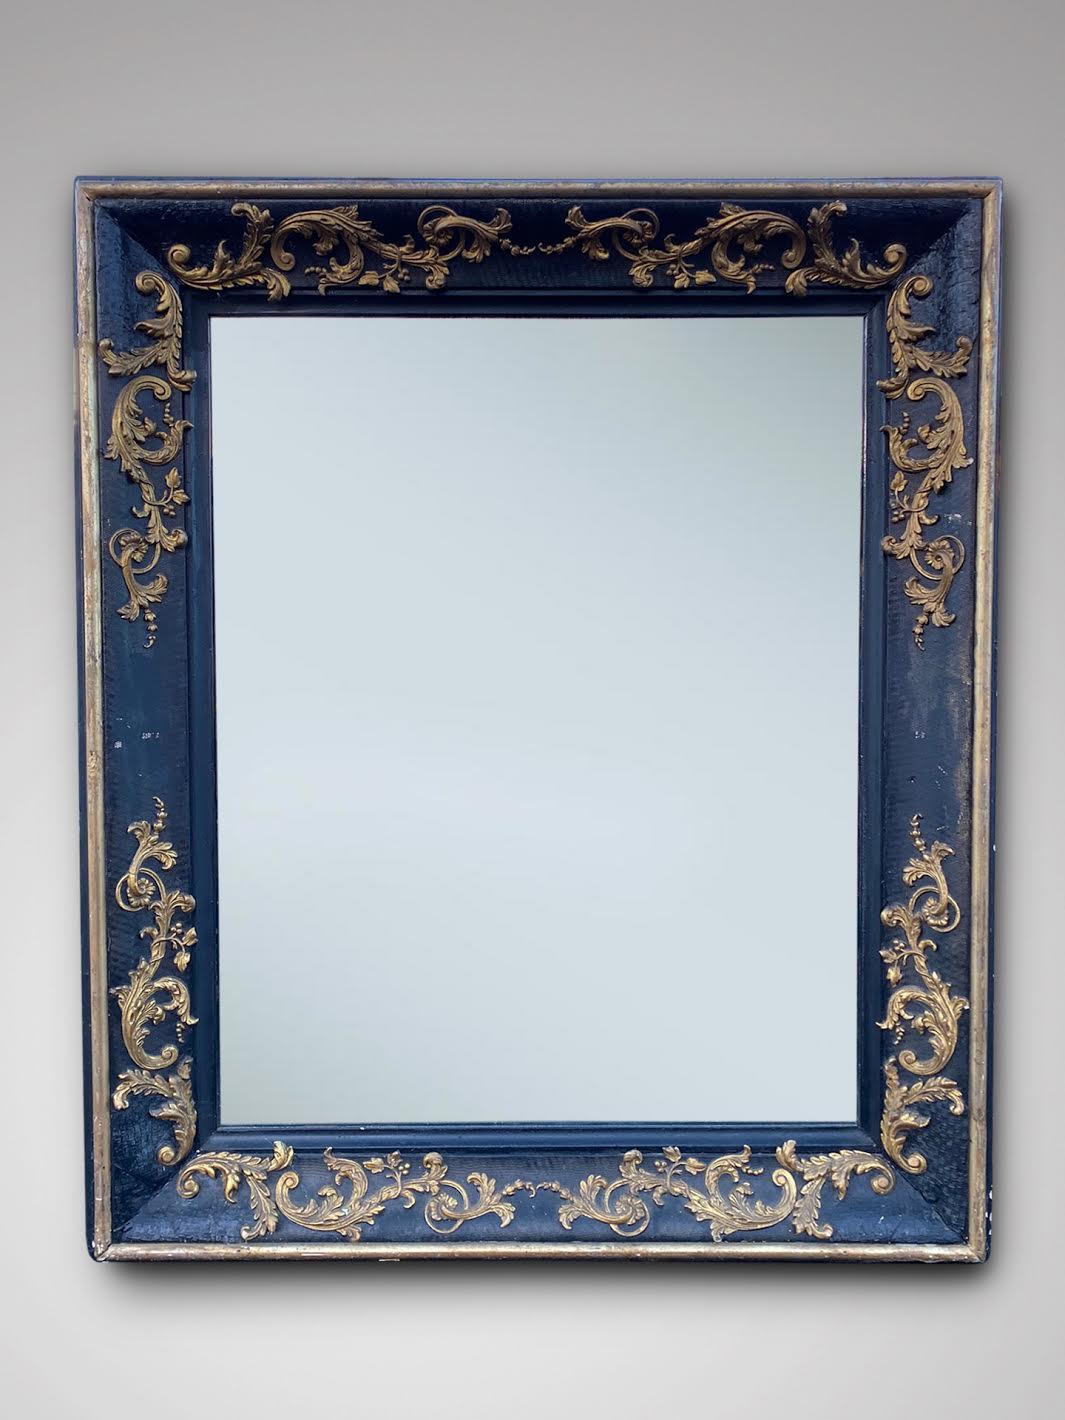 Un attrayant miroir mural Empire français du 19ème siècle à cadre rectangulaire. Le cadre carré profond en bois noir ébénisé et les détails d'accentuation dorés mettent le cadre en valeur. Pièce très décorative. Un meuble de qualité supérieure et